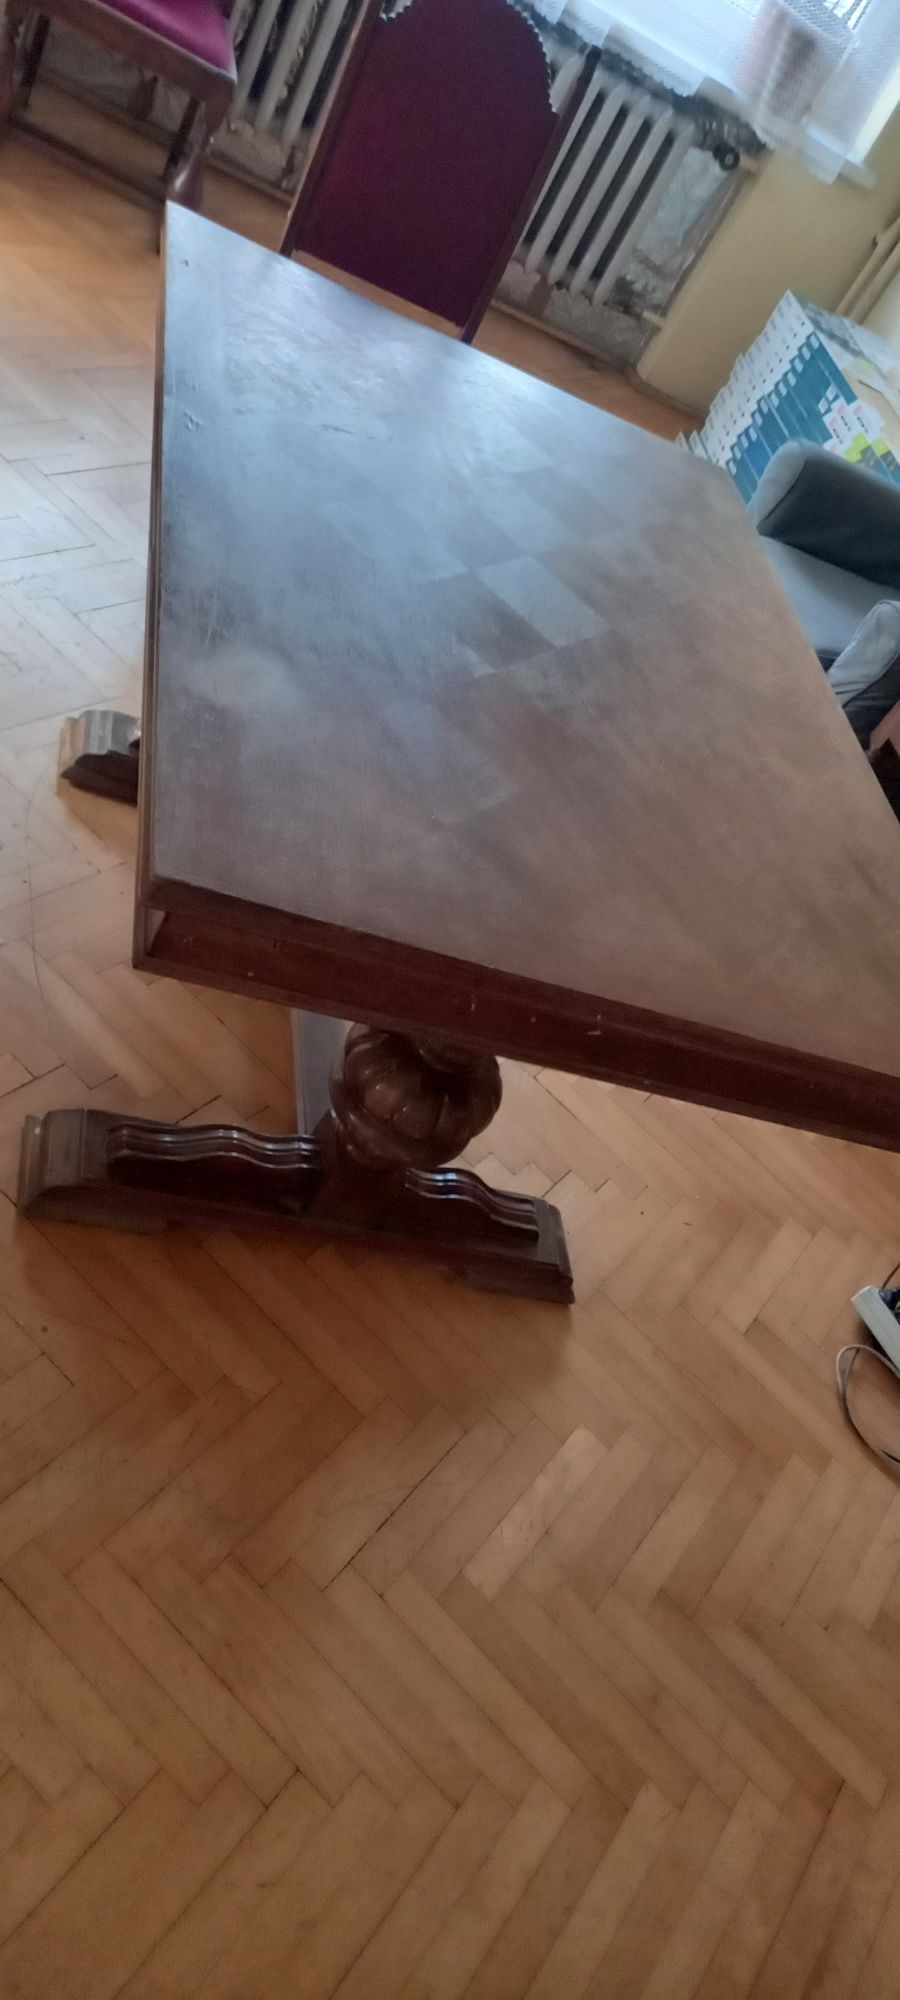 Stół rozkładany drewno stabilny, duży i ciężki